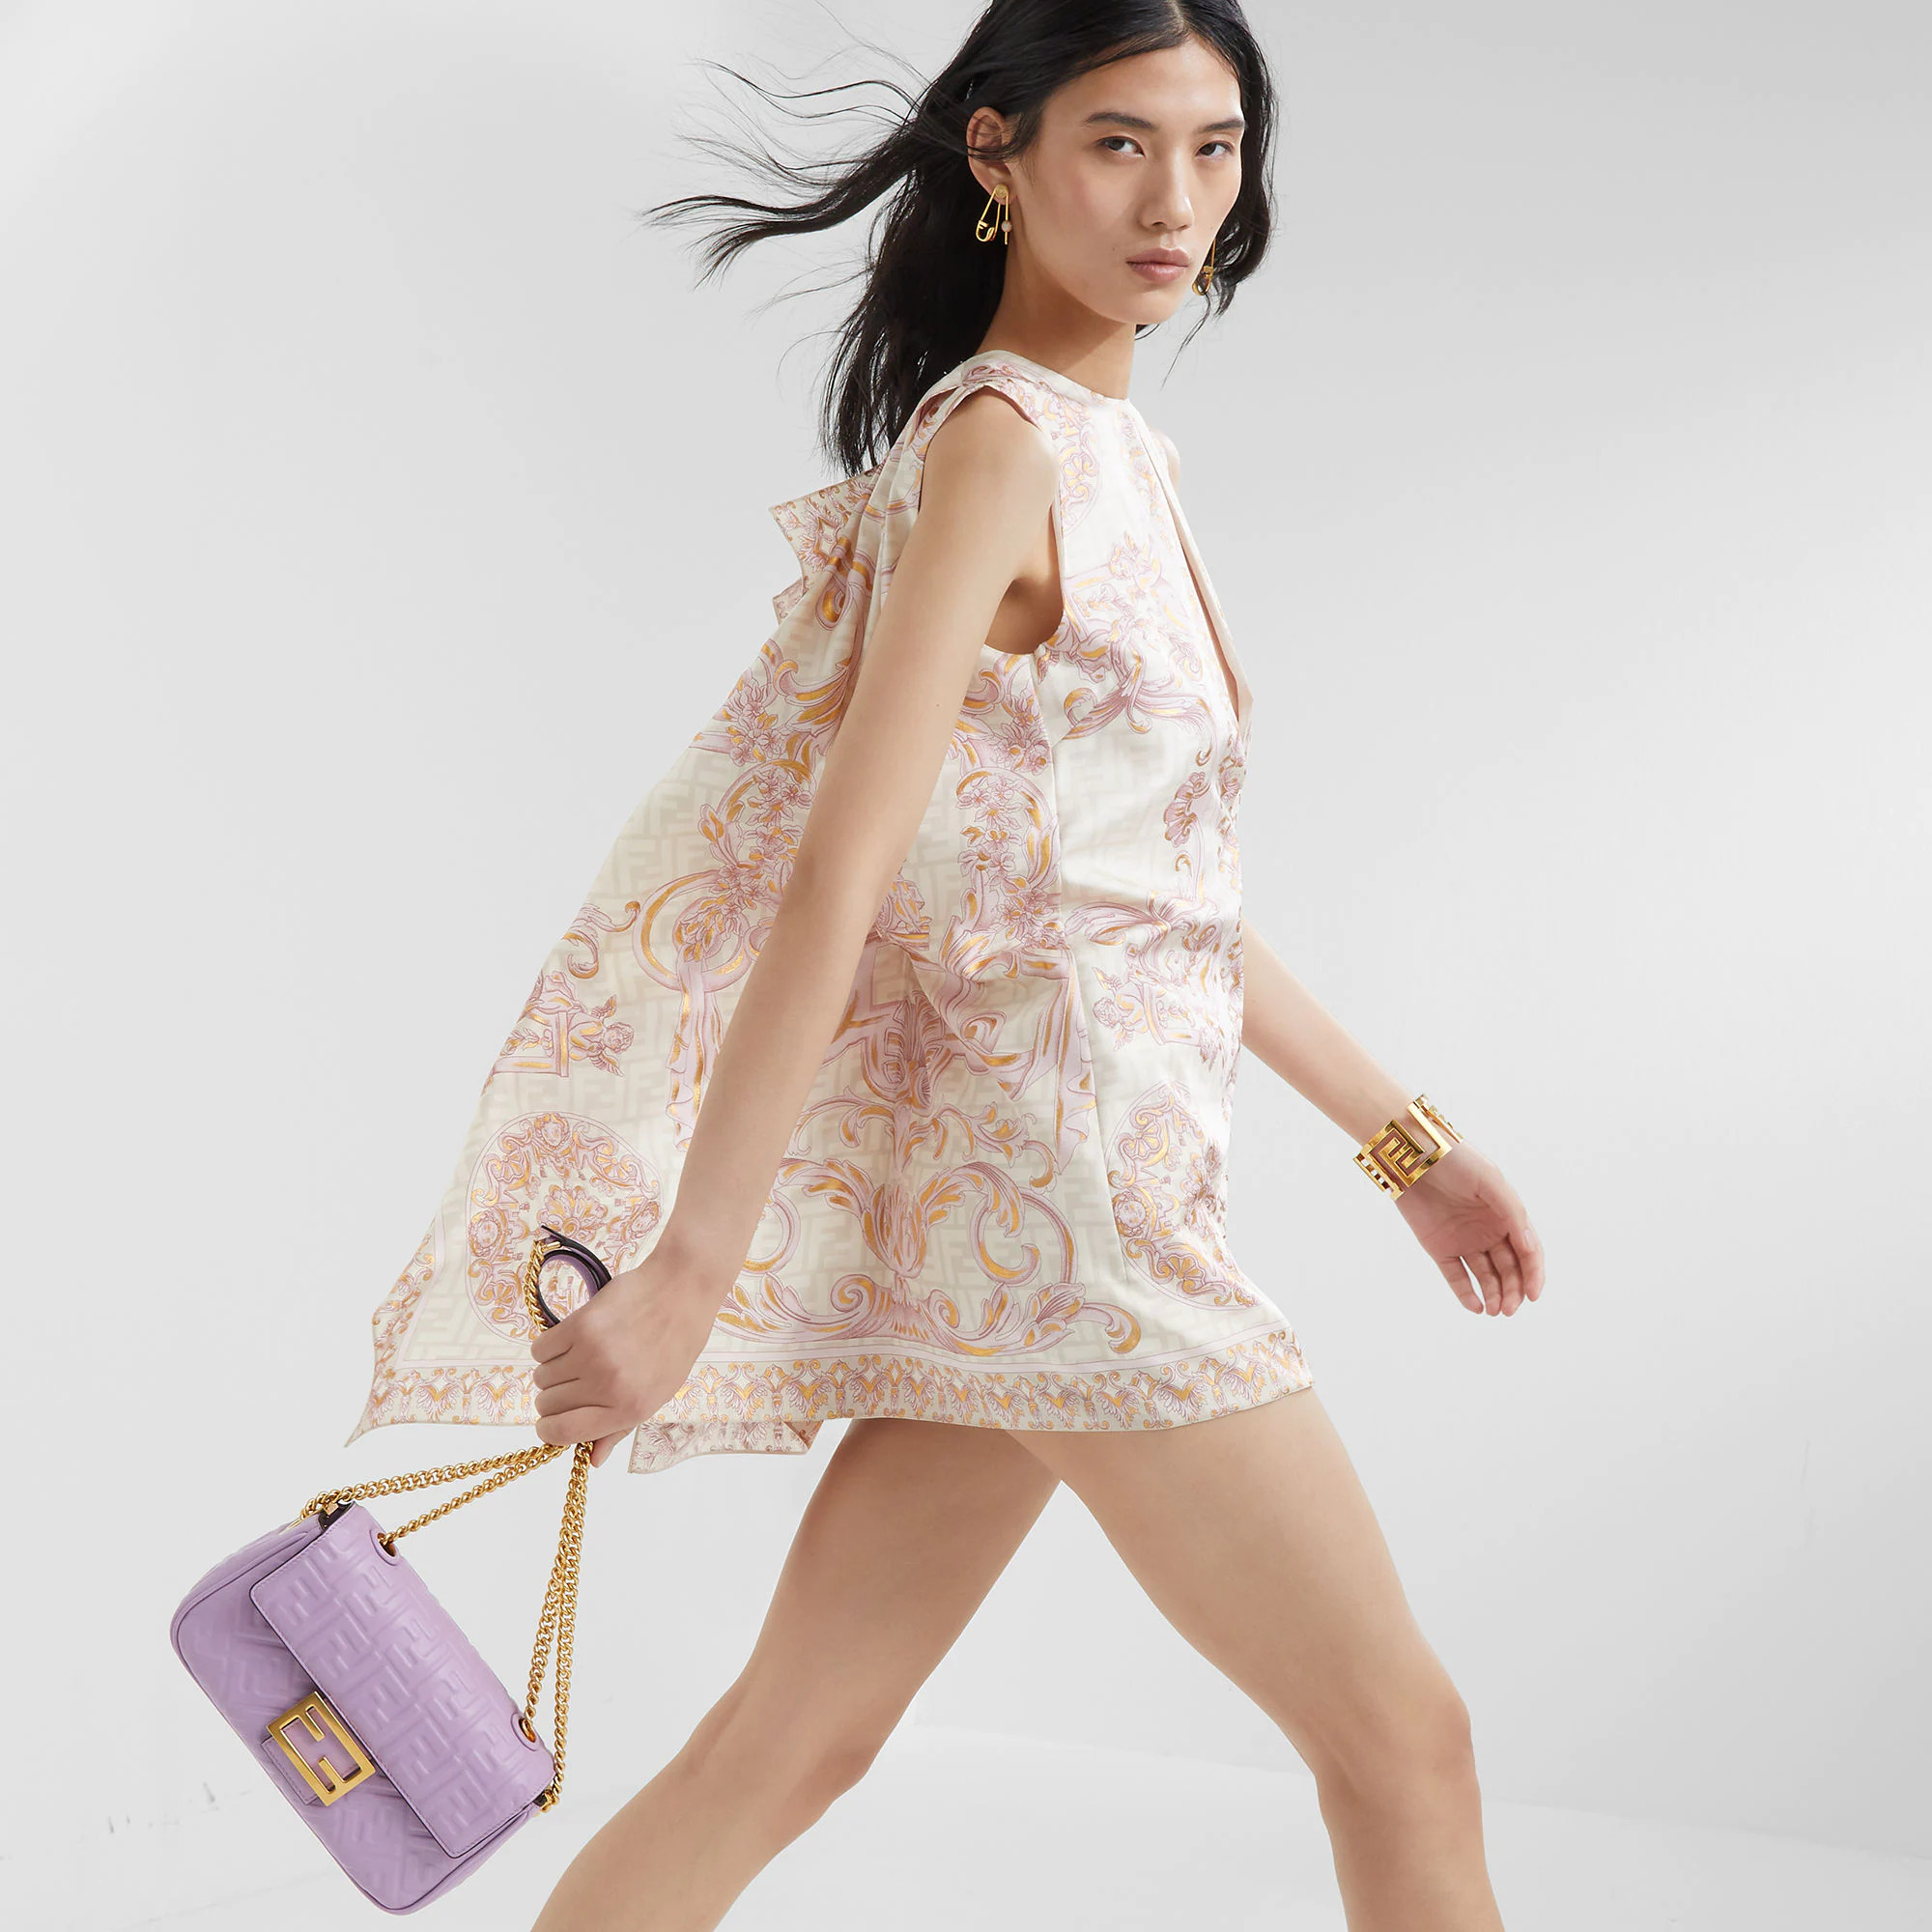 芬迪包包中国官网价格 Fendi Iconic Baguette 中长链手袋 淡紫色纳帕皮革